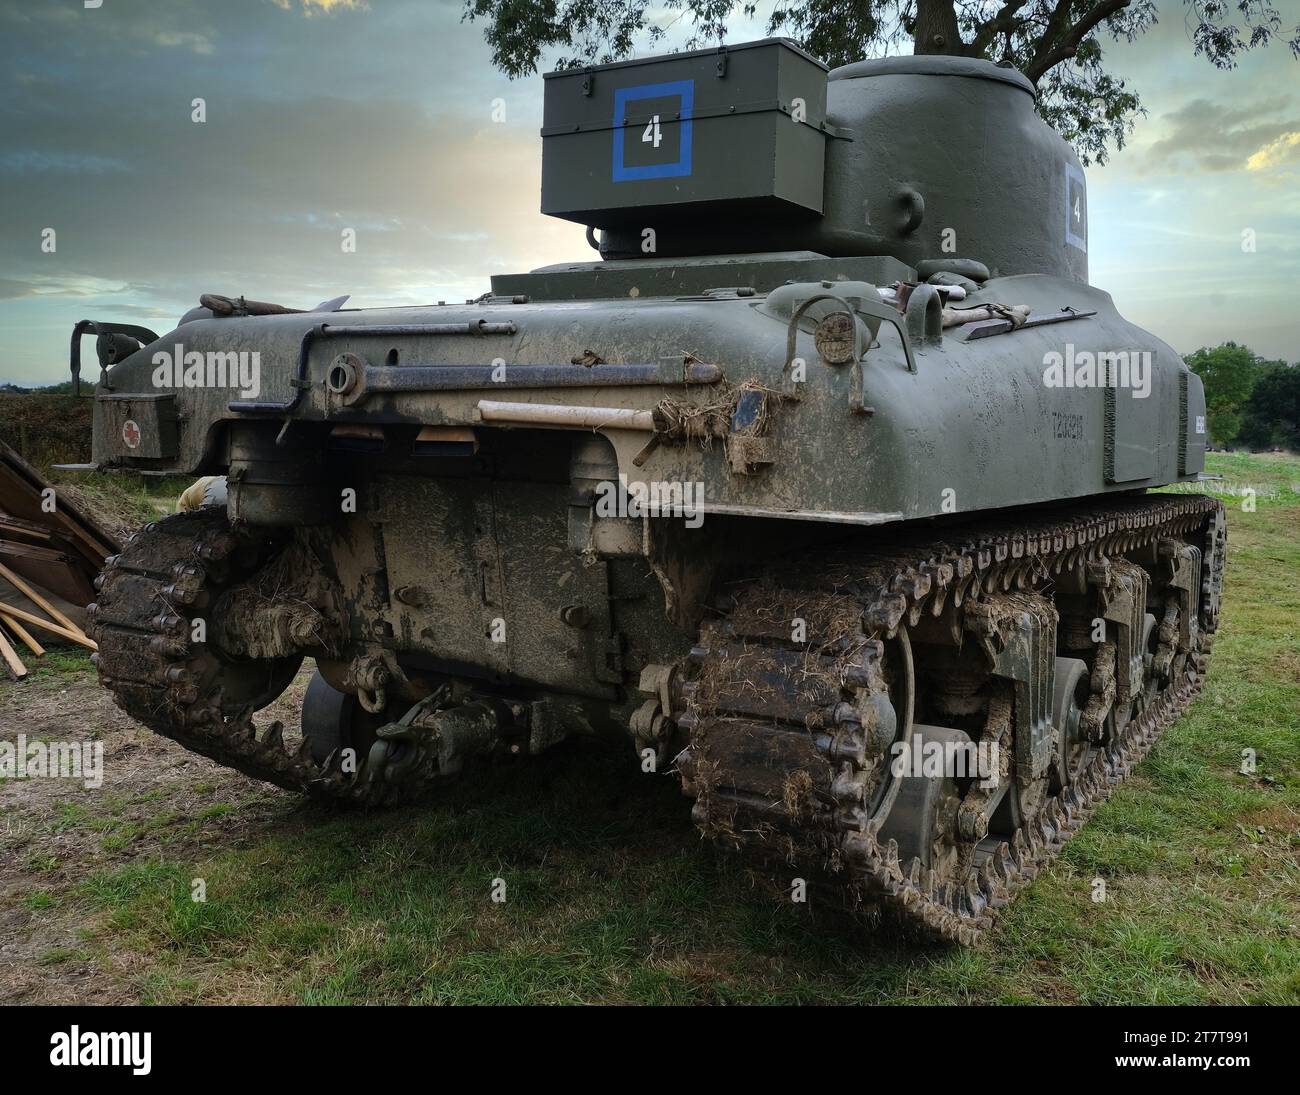 Der M4 Sherman, offiziell Medium Tank, M4, war der am häufigsten verwendete Medium Tank von den Vereinigten Staaten und westlichen Alliierten im Zweiten Weltkrieg Stockfoto